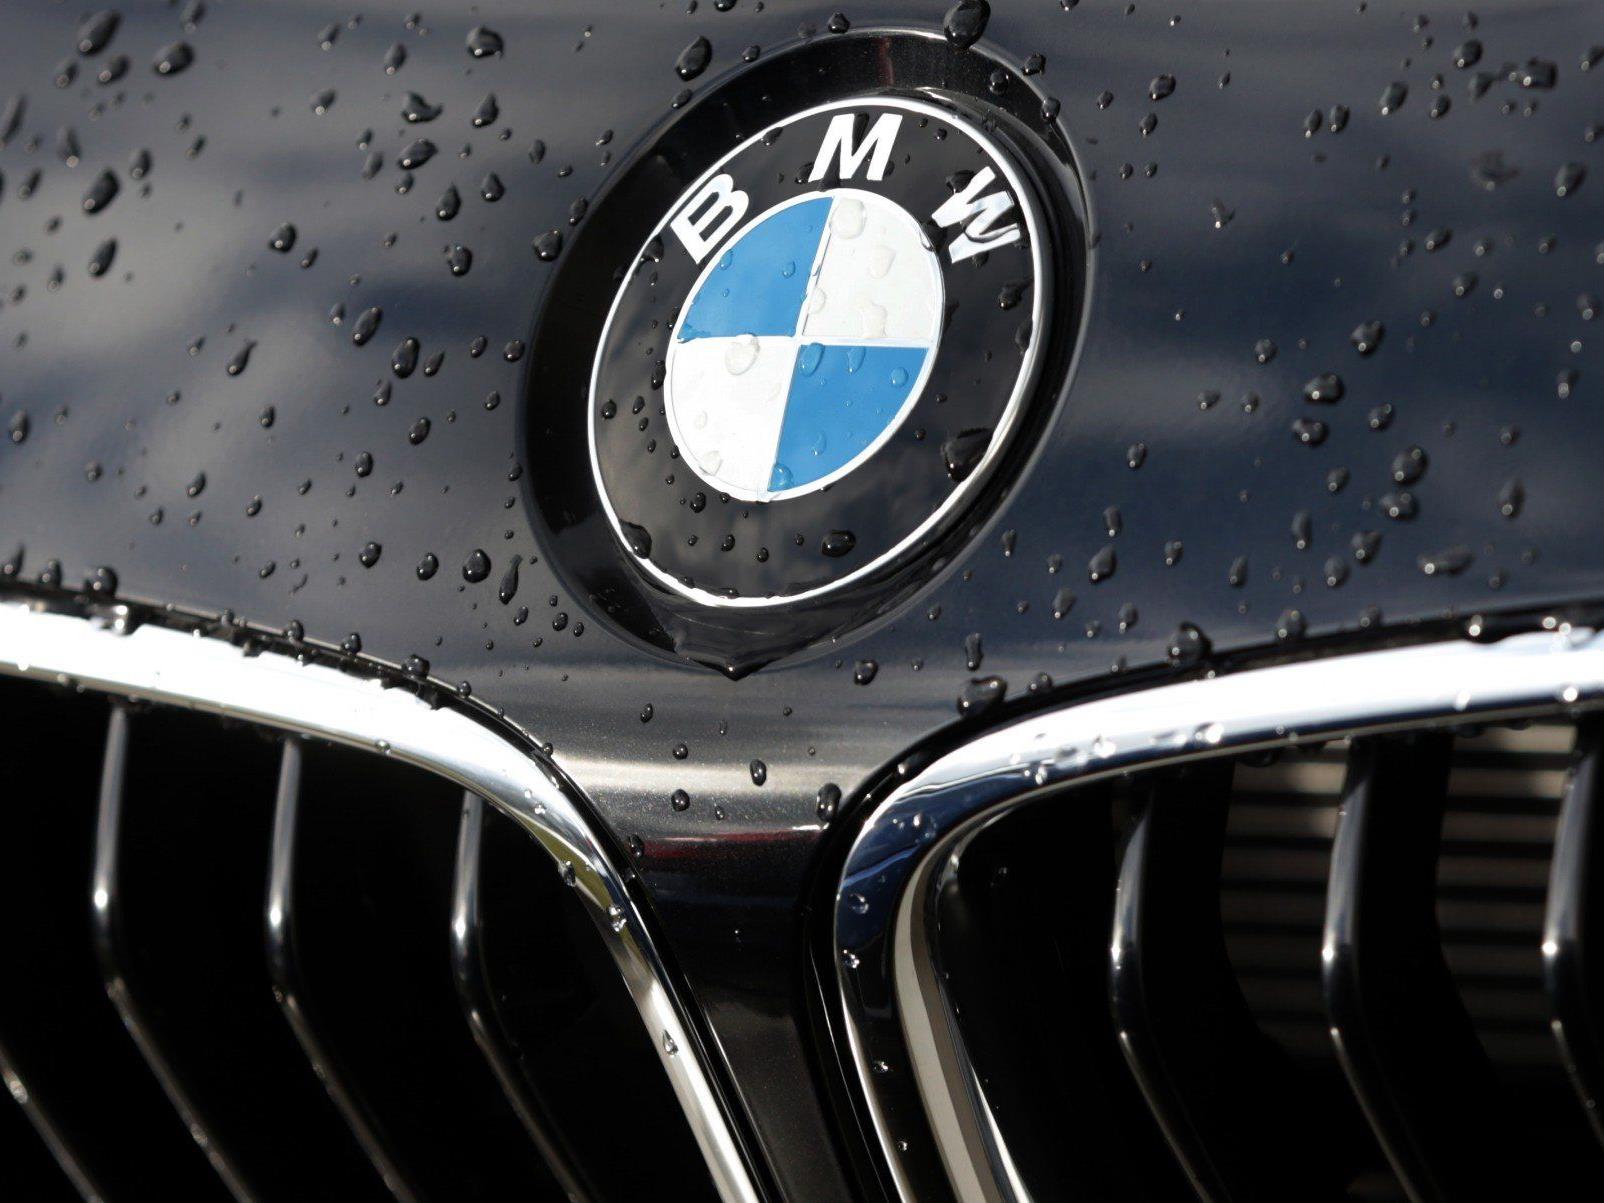 Der deutsche Autokonzern BMW steht unter Spionageverdacht - das Unternehmen dementiert diese Gerüchte.